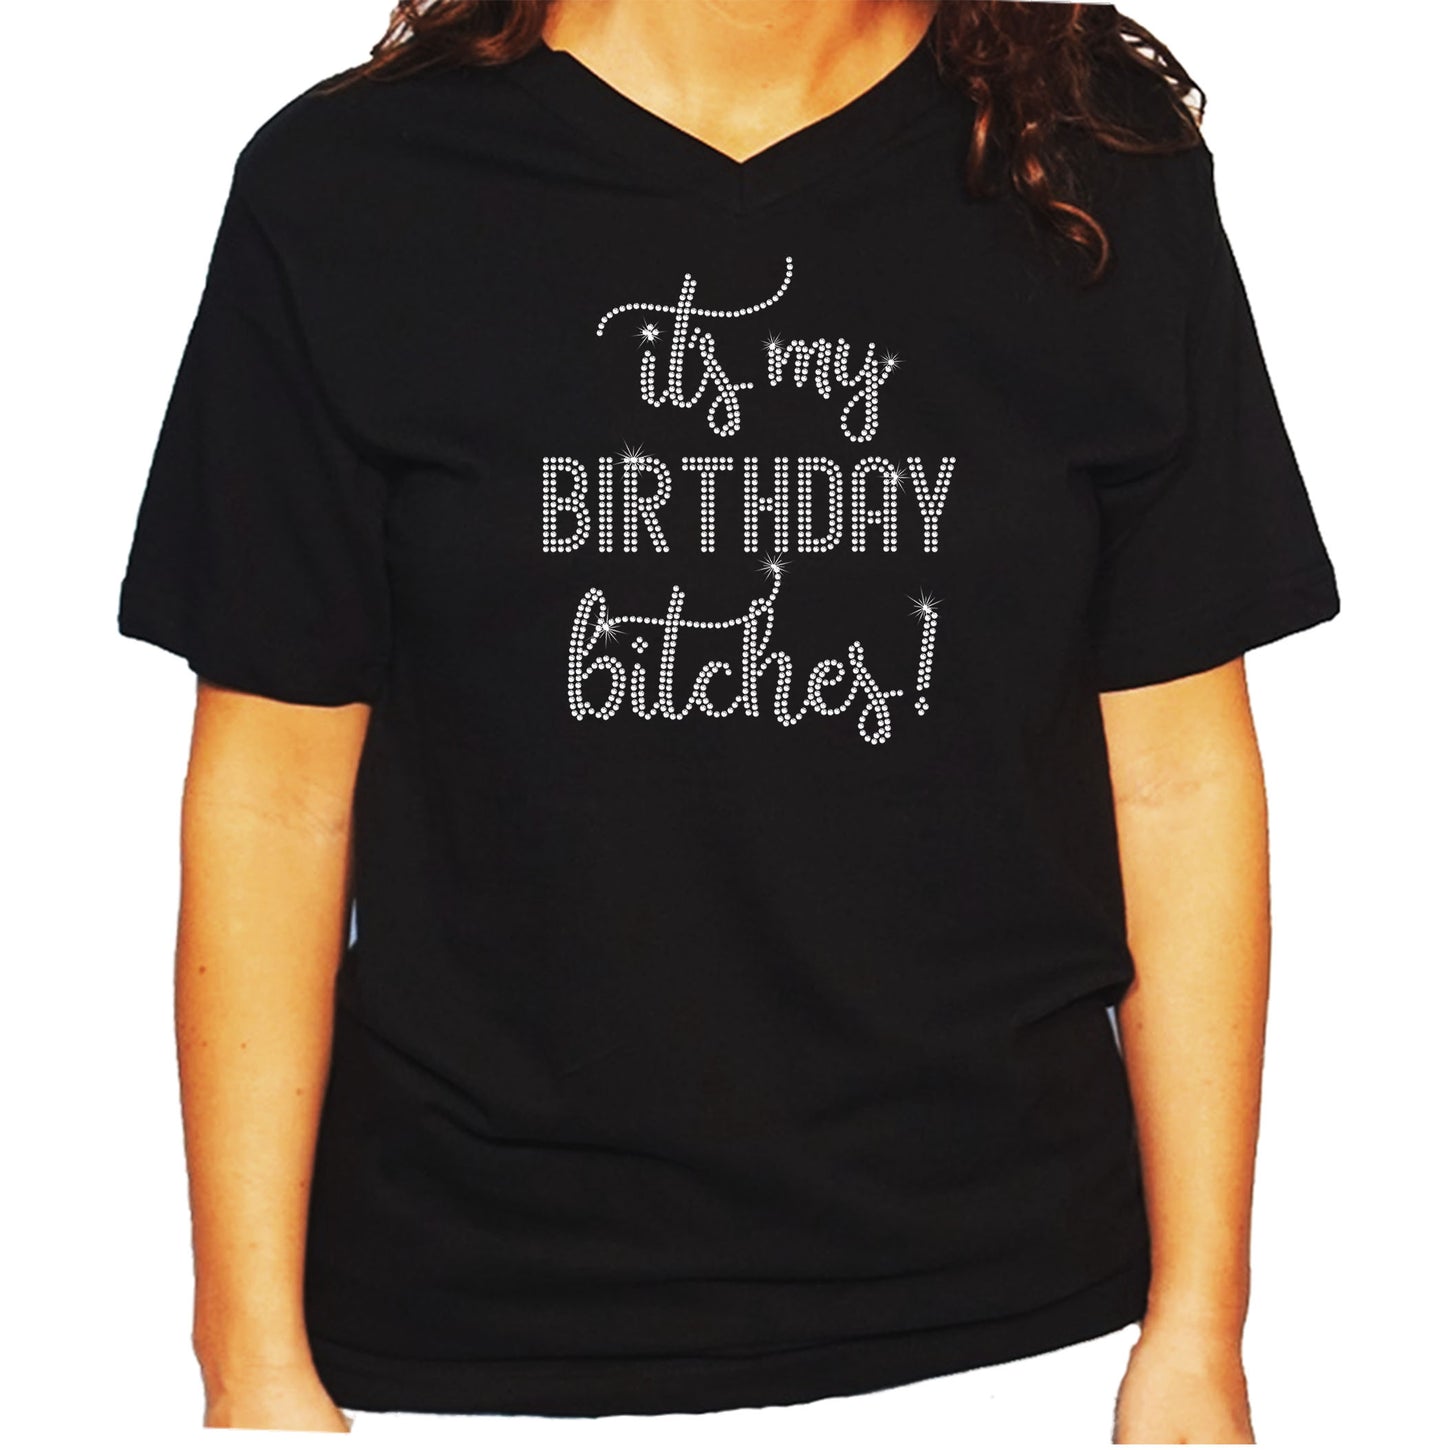 Women's/Unisex Rhinestone T-Shirt with It's My Birthday Bitches - Birthday Shirt, Script Birthday Shirt